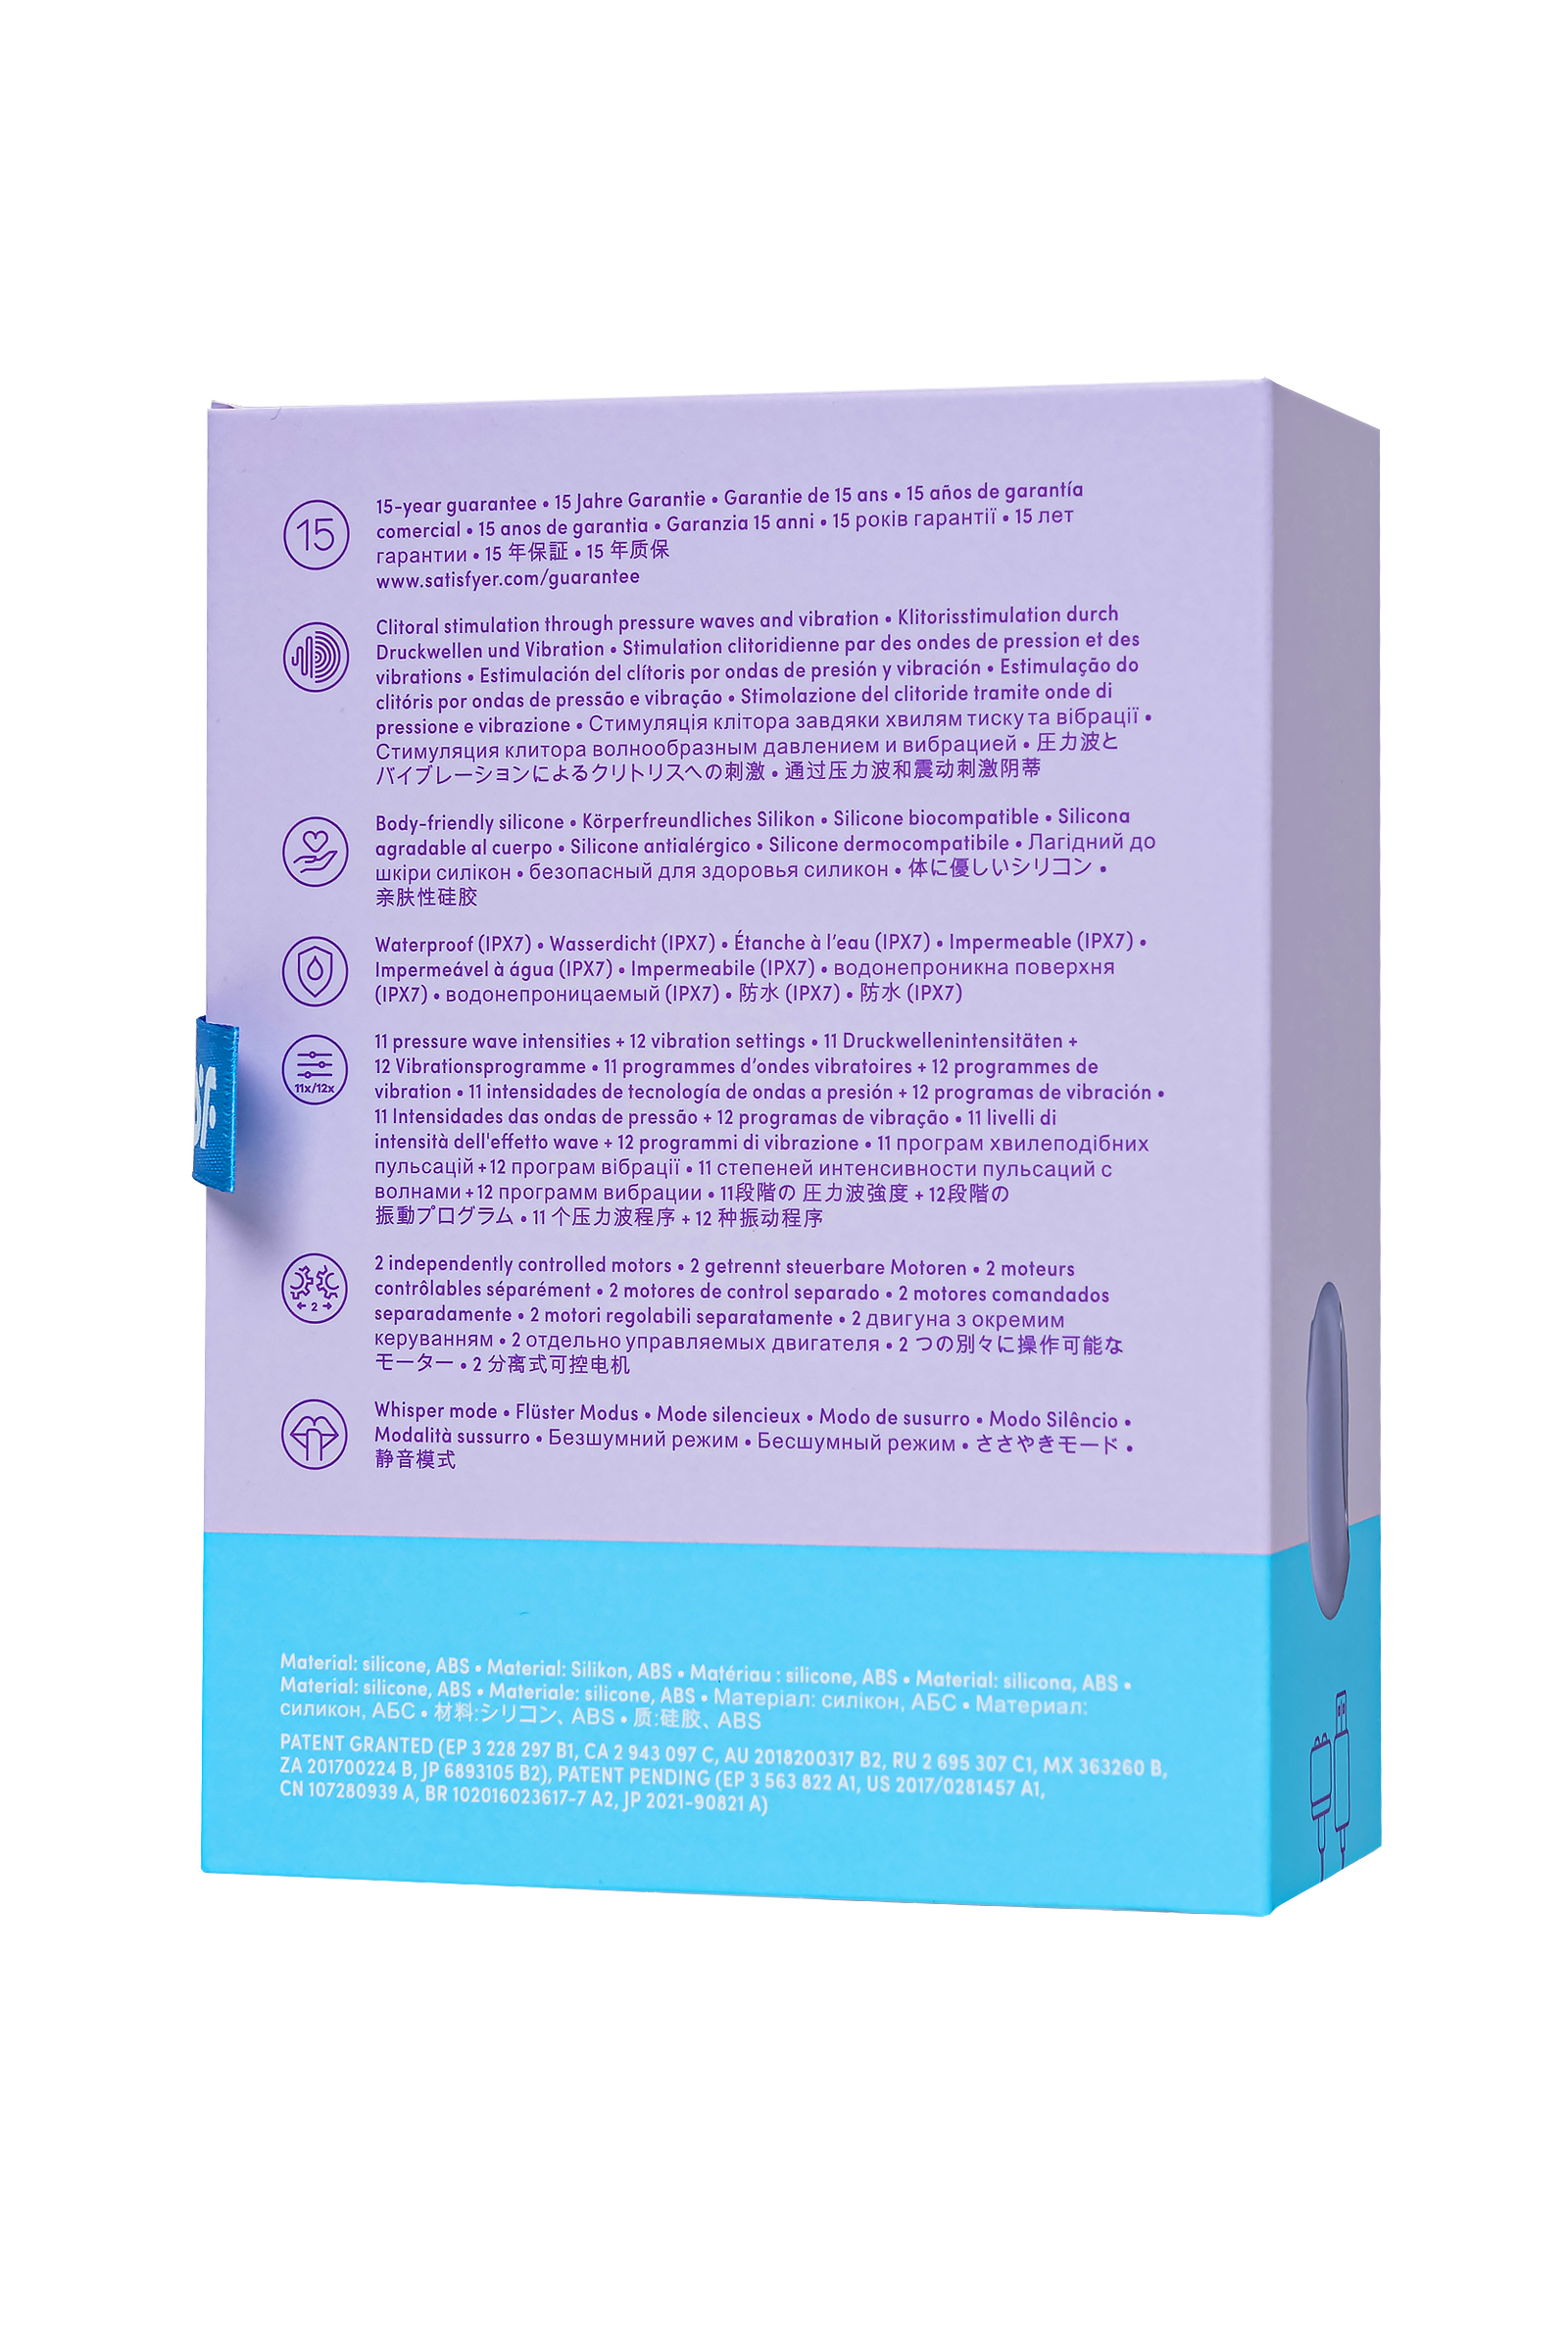 Вакуумный стимулятор клитора с вибрацией Satisfyer Pro To Go 2, фиолетовый